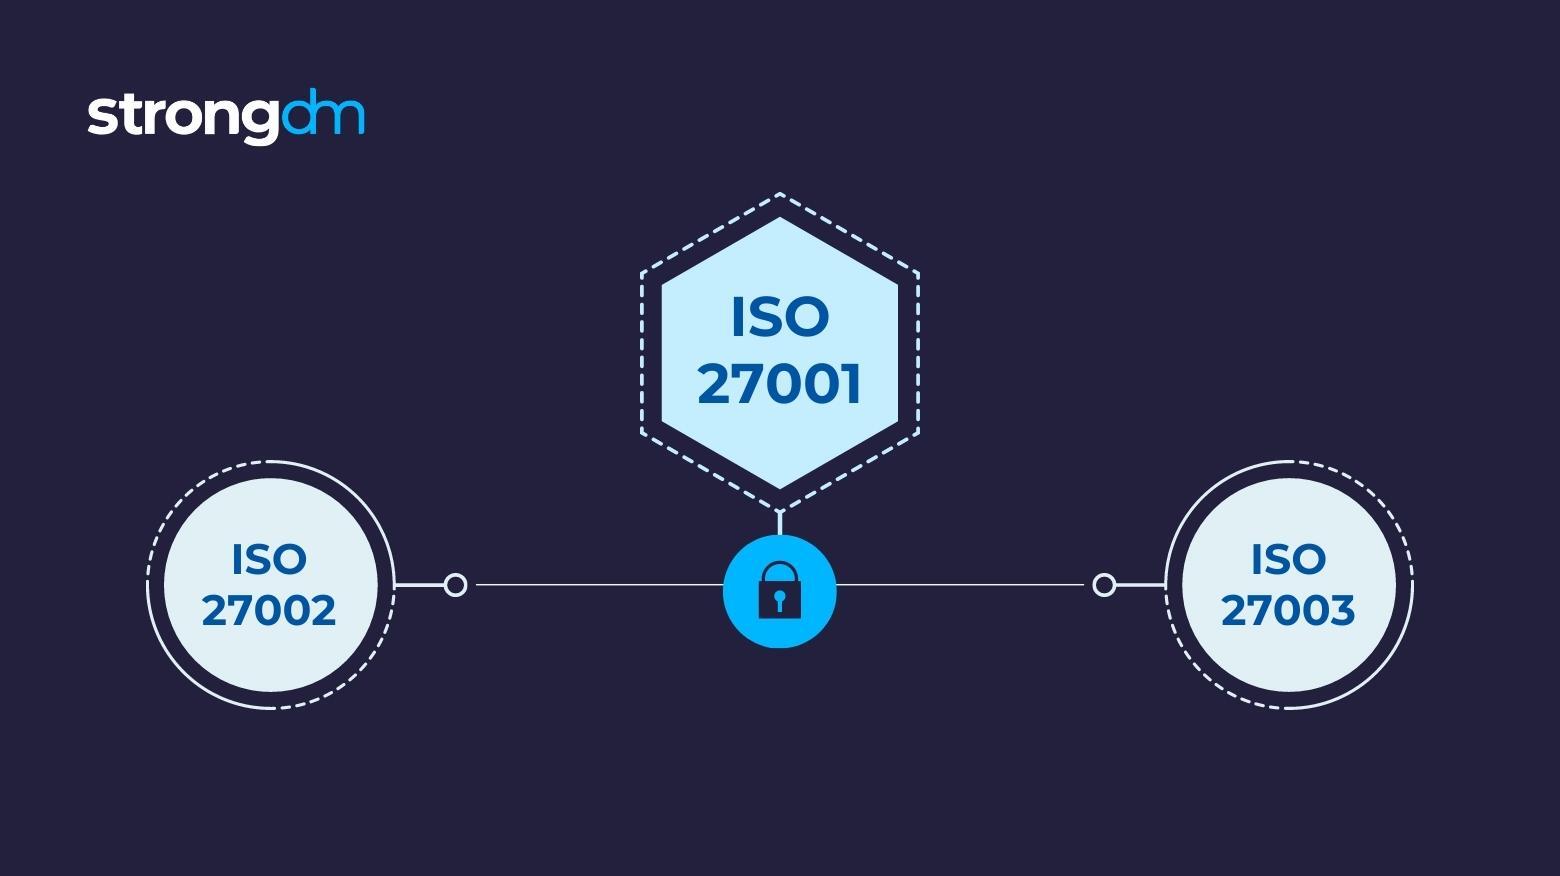 ISO 27001 vs 27002 vs 27003